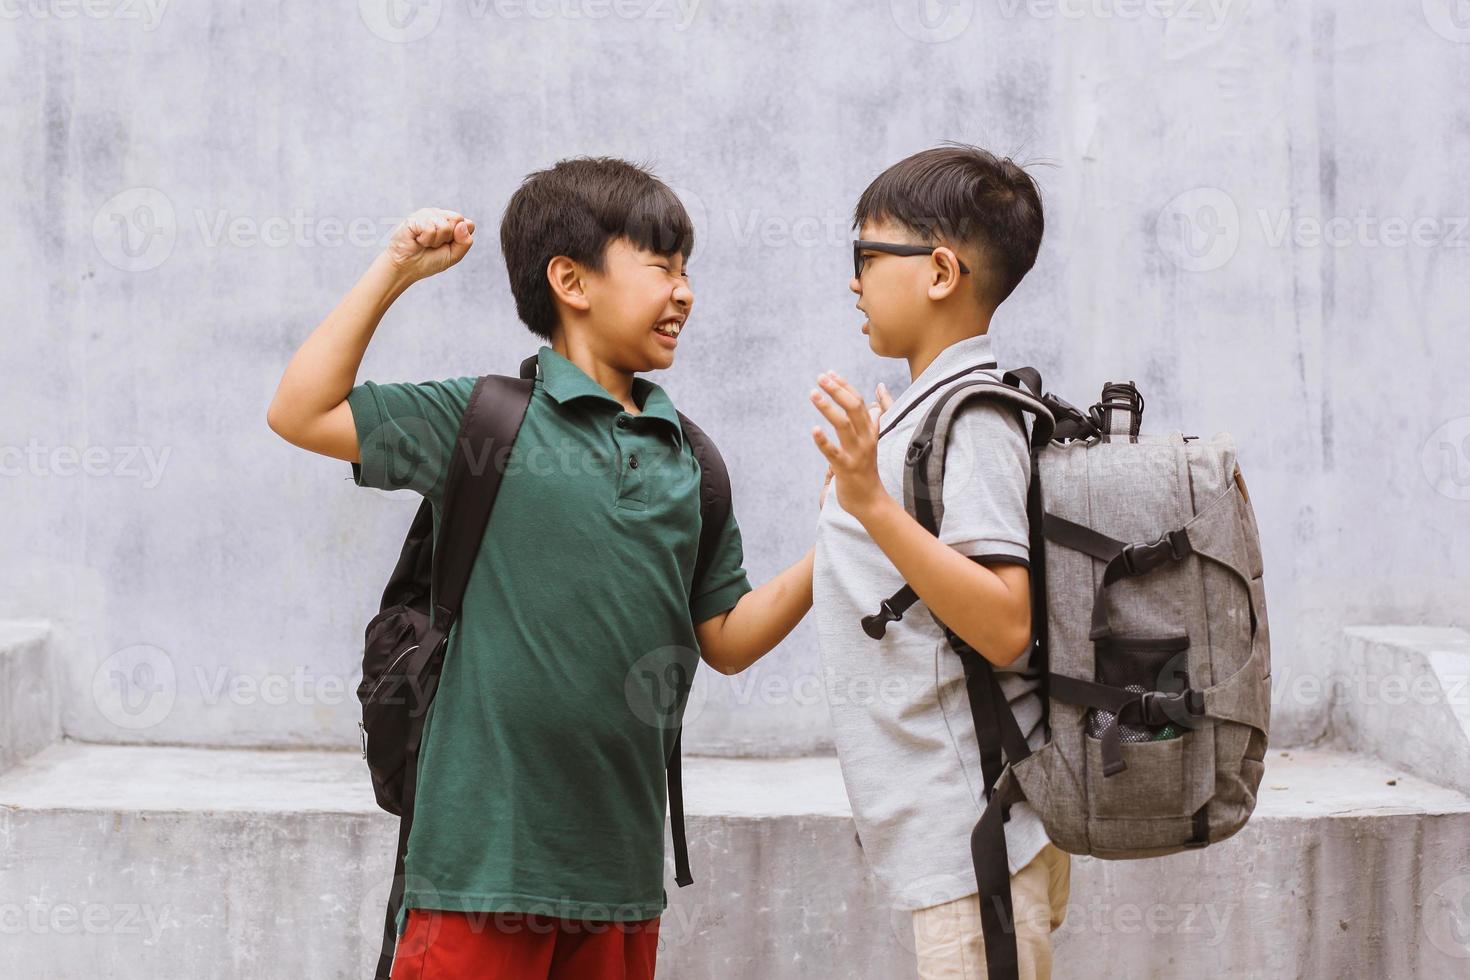 estudante asiático sendo intimidado na escola ou crianças brigando ou atacando seu colega de classe na escola foto